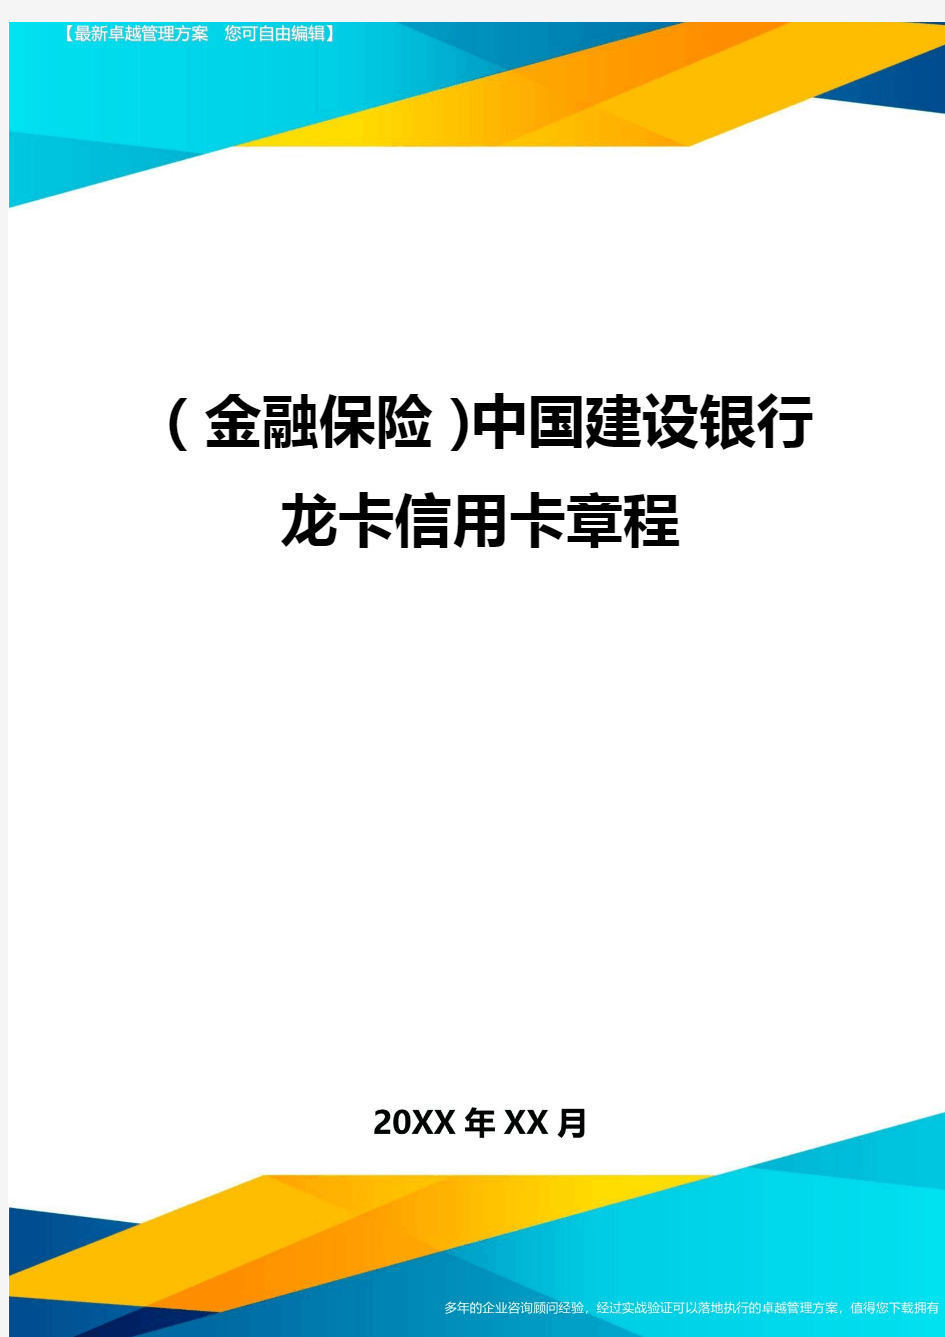 2020年(金融保险)中国建设银行龙卡信用卡章程